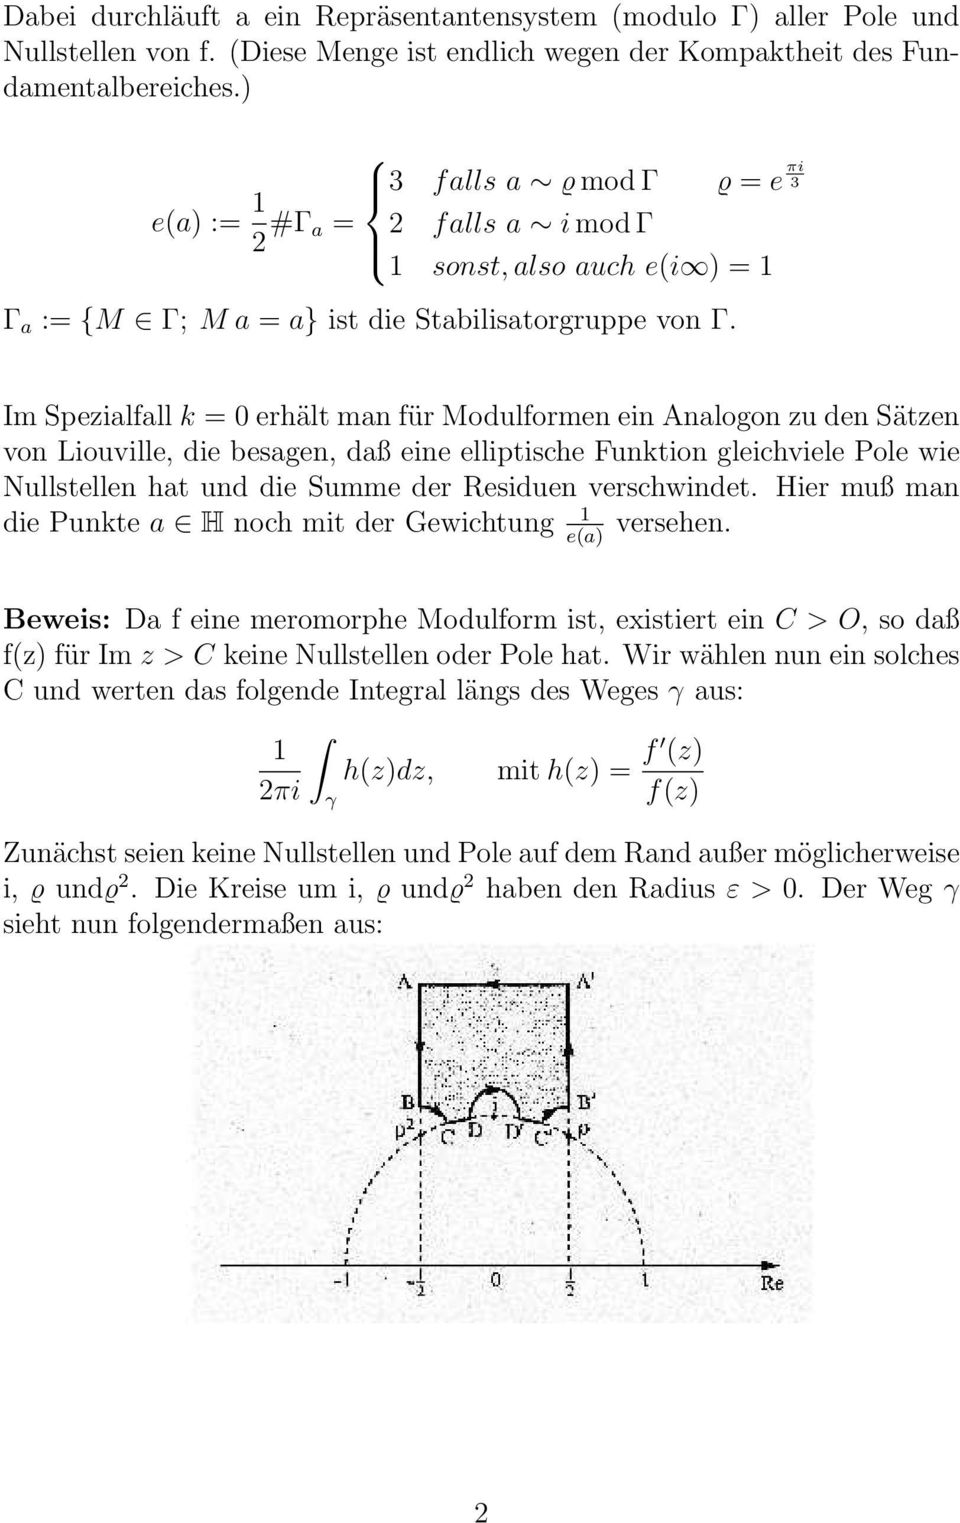 Im Spezialfall k = erhält man für Modulformen ein Analogon zu den Sätzen von Liouville, die besagen, daß eine elliptische Funktion gleichviele Pole wie Nullstellen hat und die Summe der Residuen